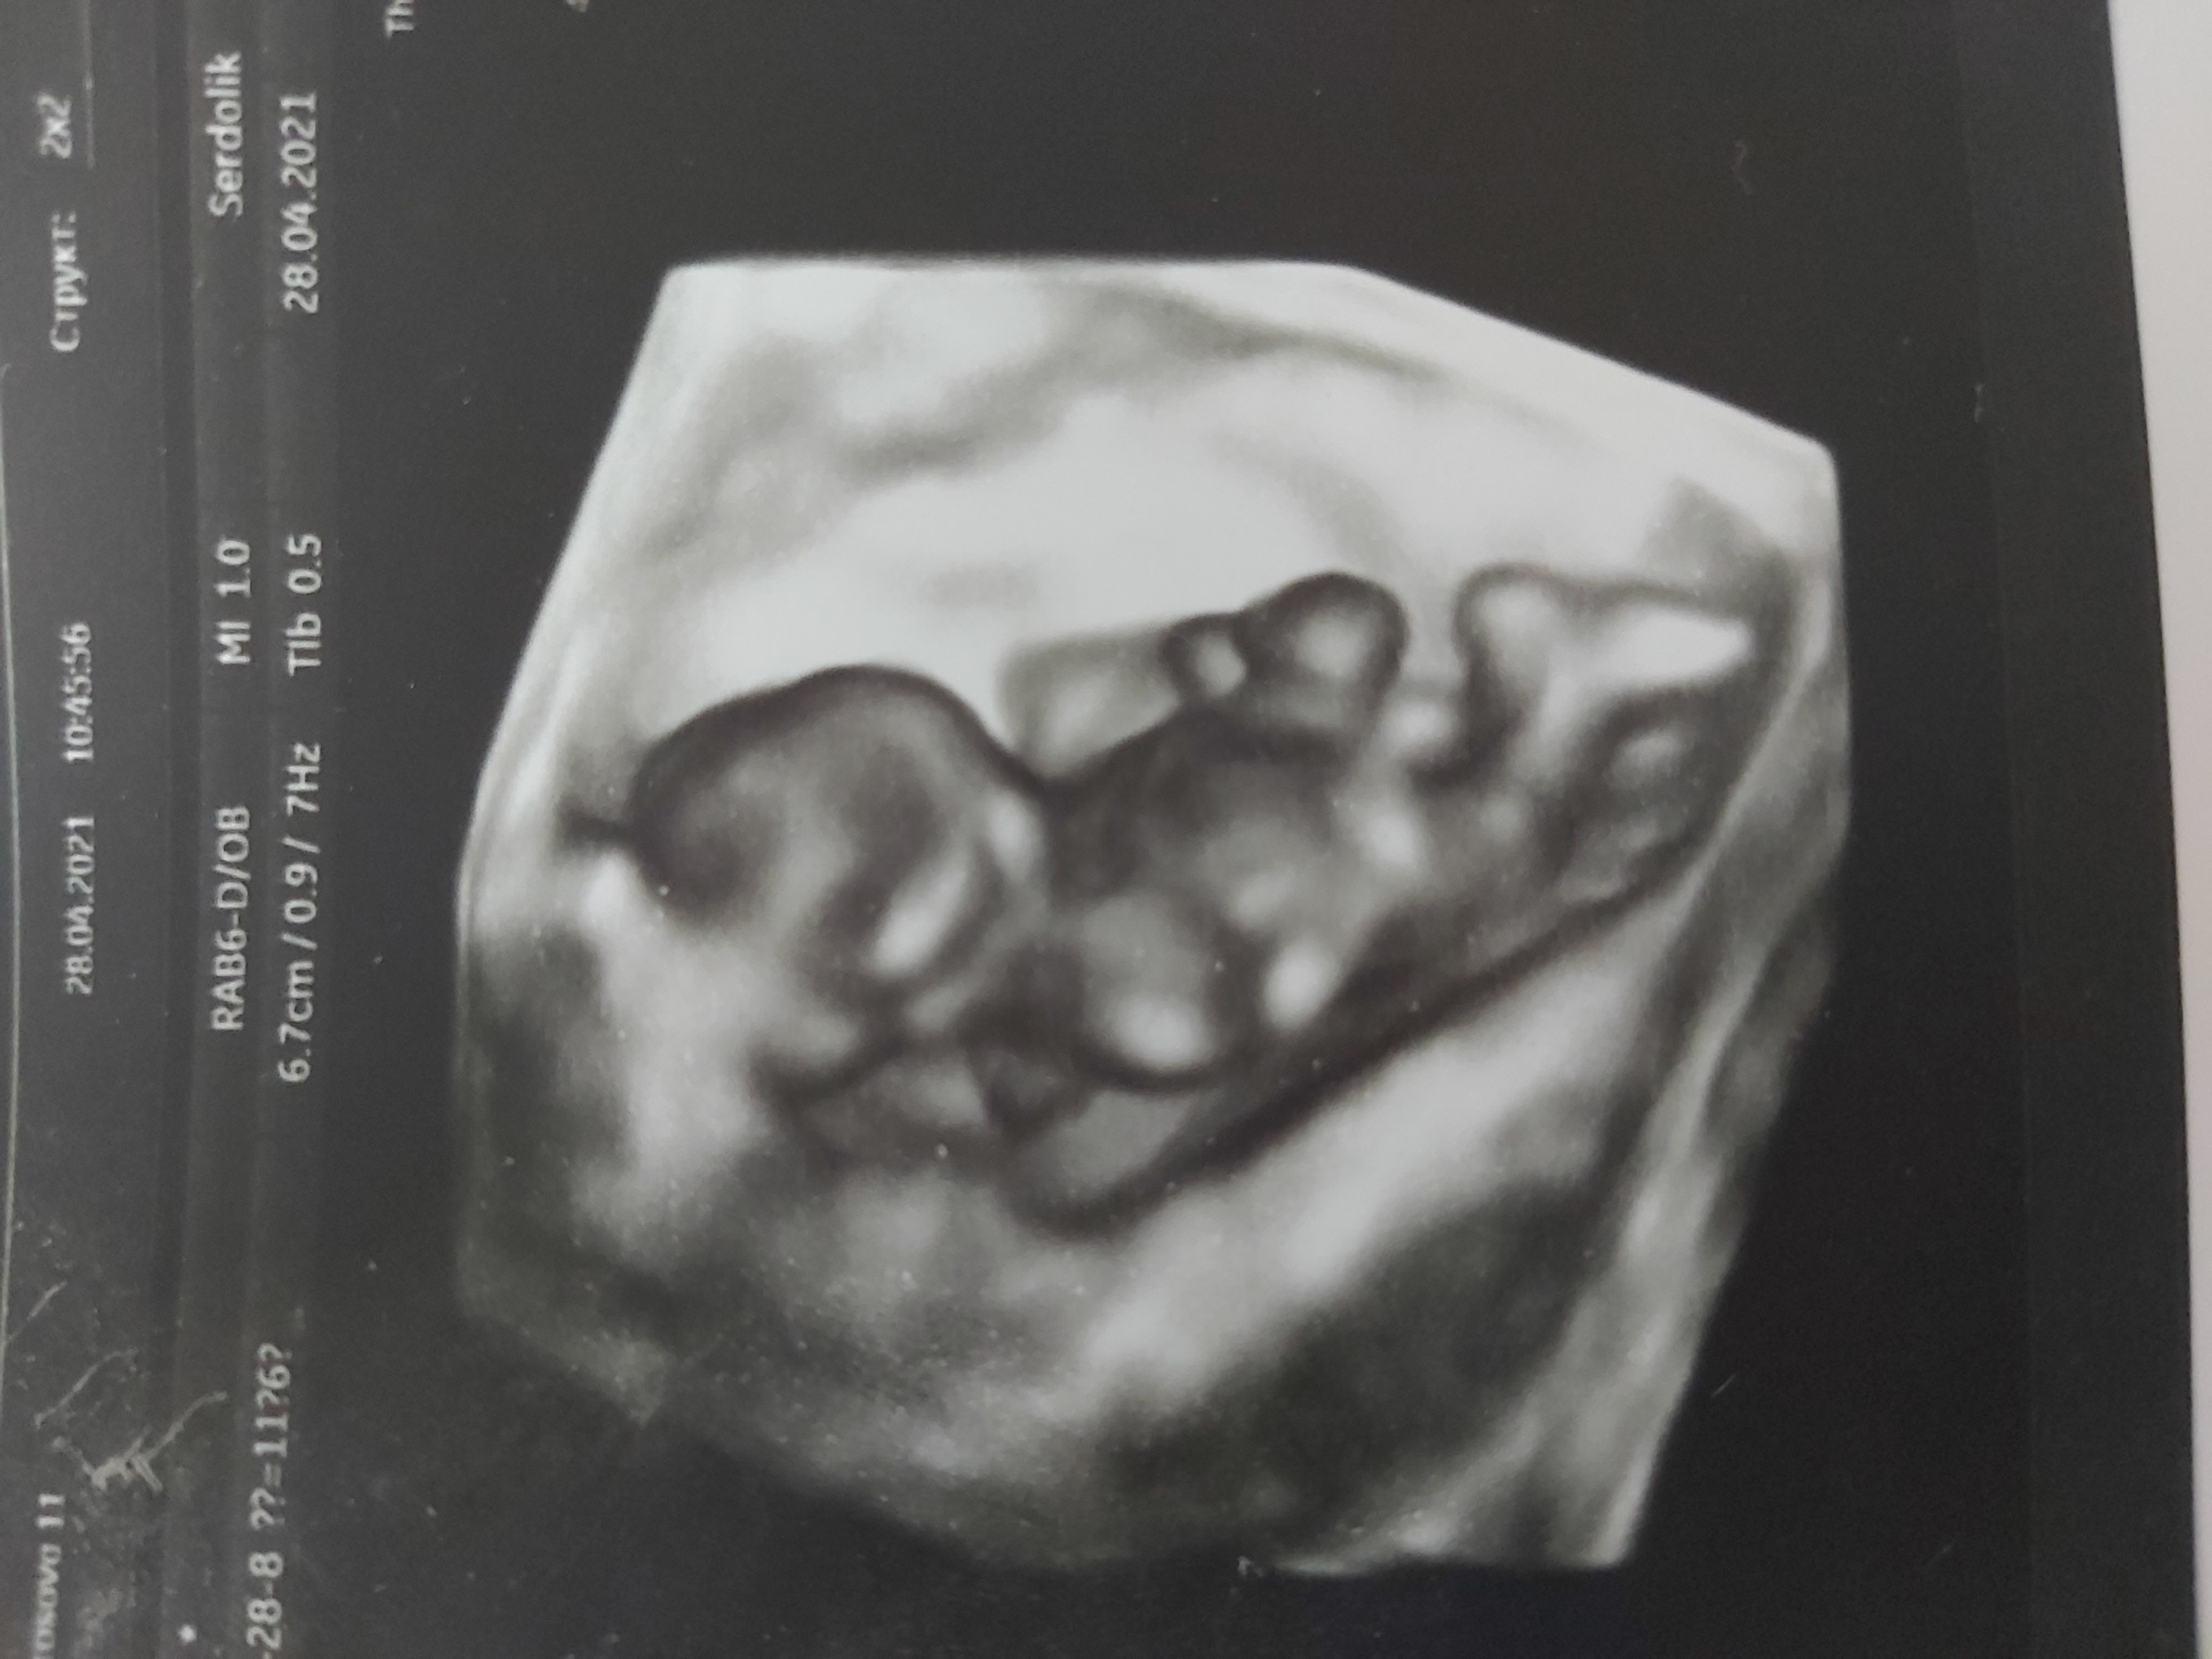 Всем ДД! Срок на фотках одинаковый, слева первая беременность. Справа ... image №4